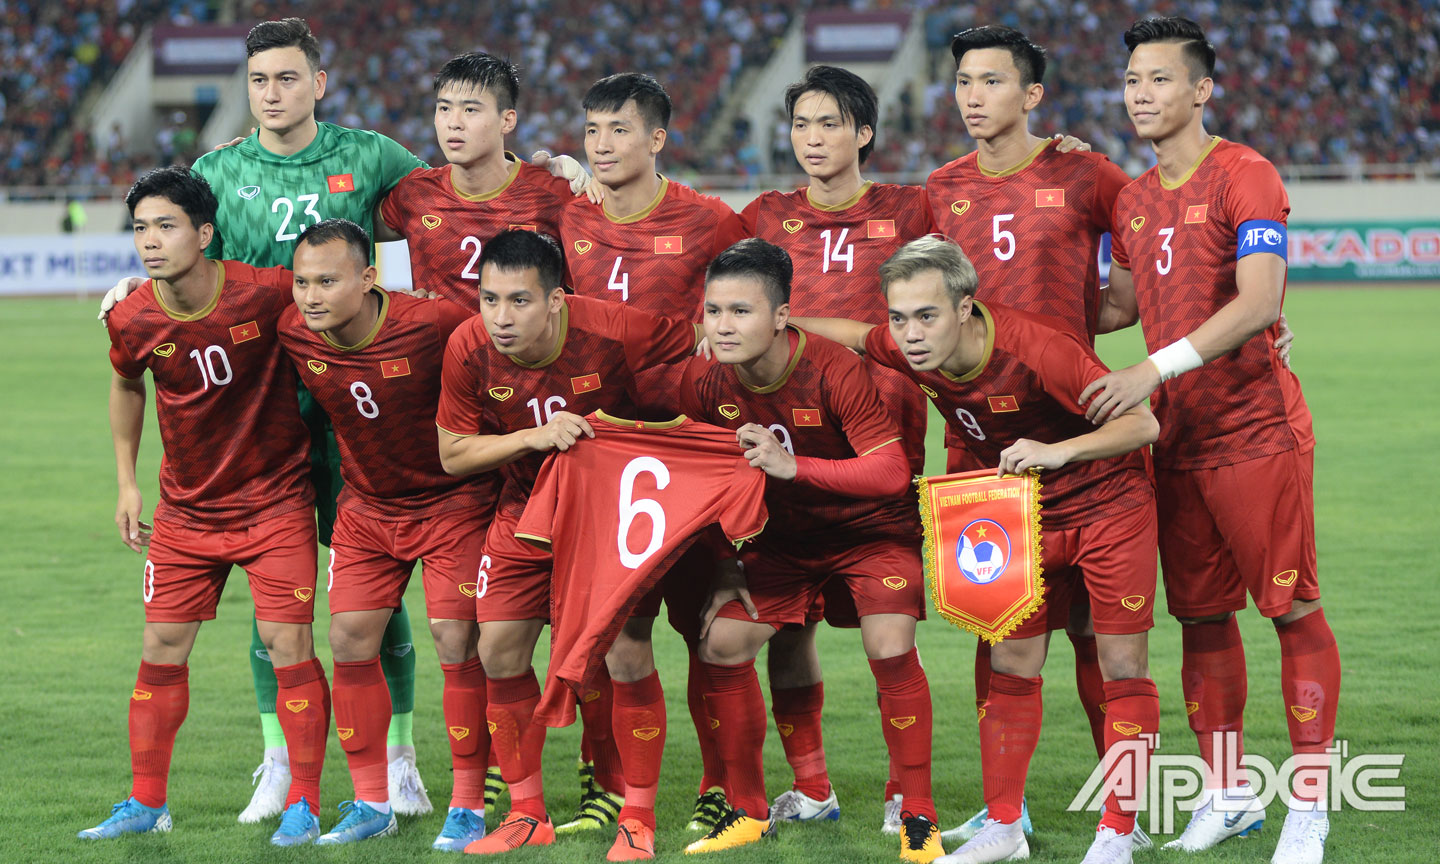 Tiền vệ Lương Xuân Trường tiếp tục vắng bóng nhưng được các cầu thủ Việt Nam nhớ đến.